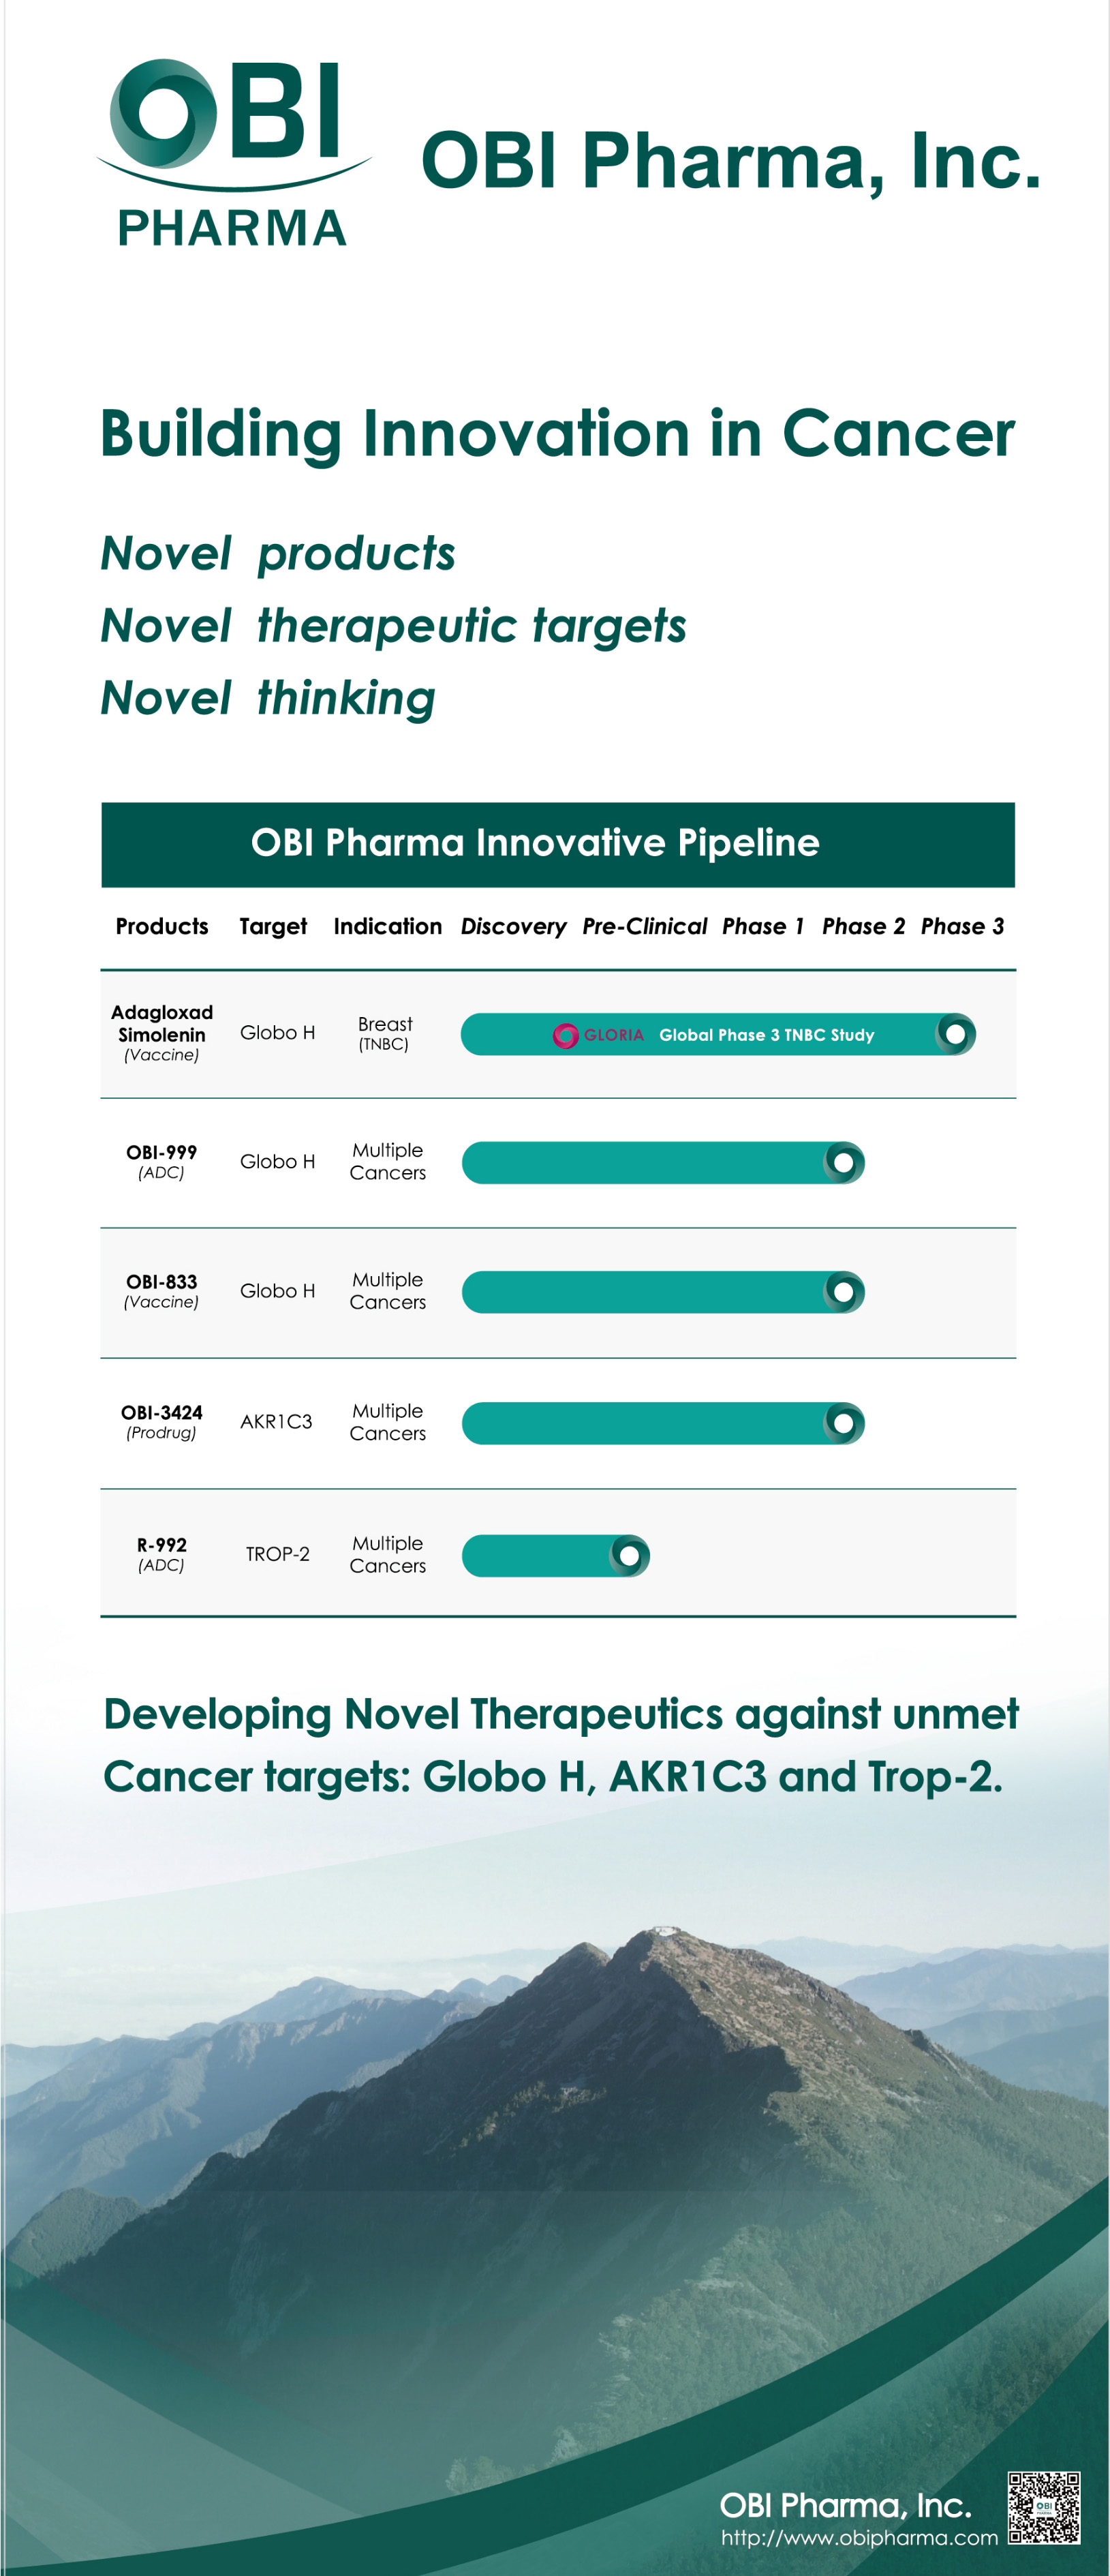 OBI Pharma Innovative Pipeline